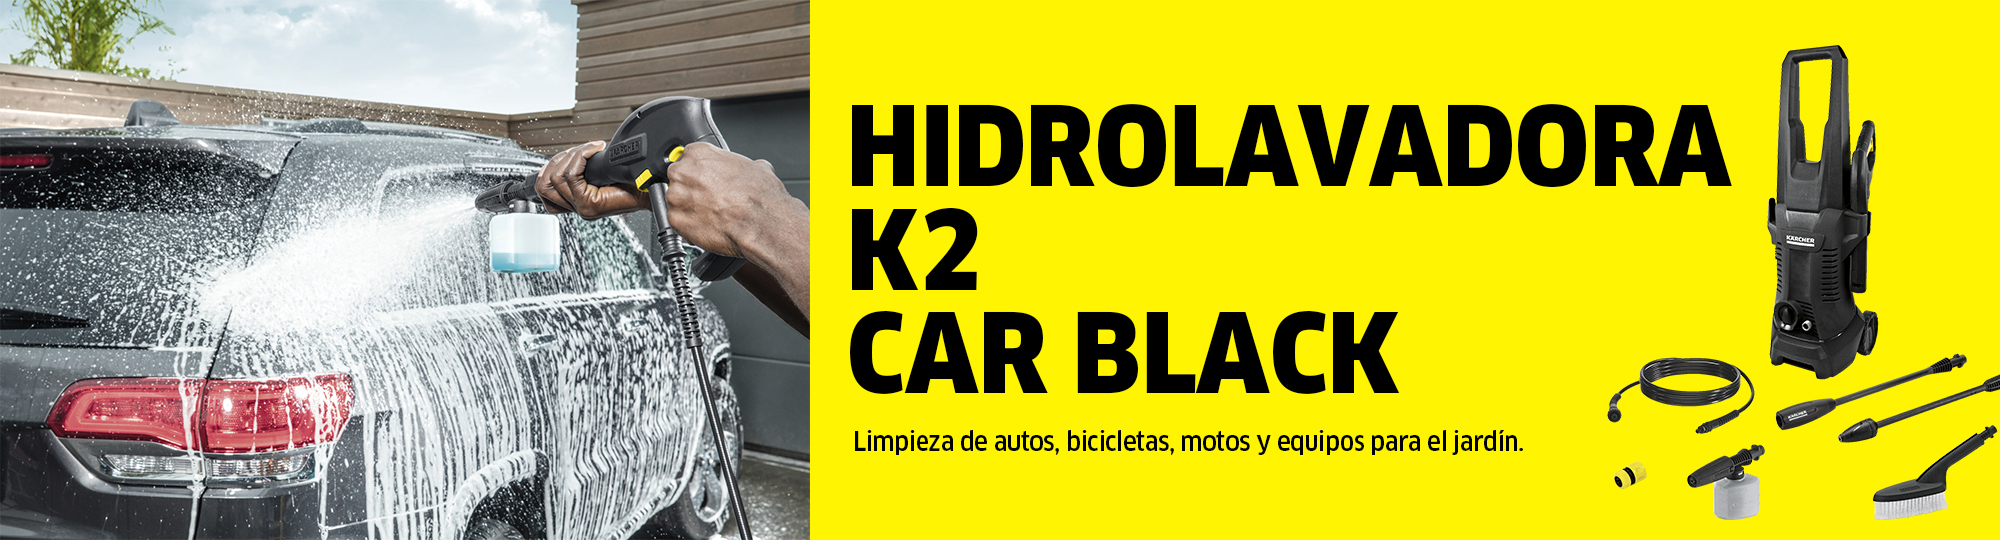 K2 Car Black